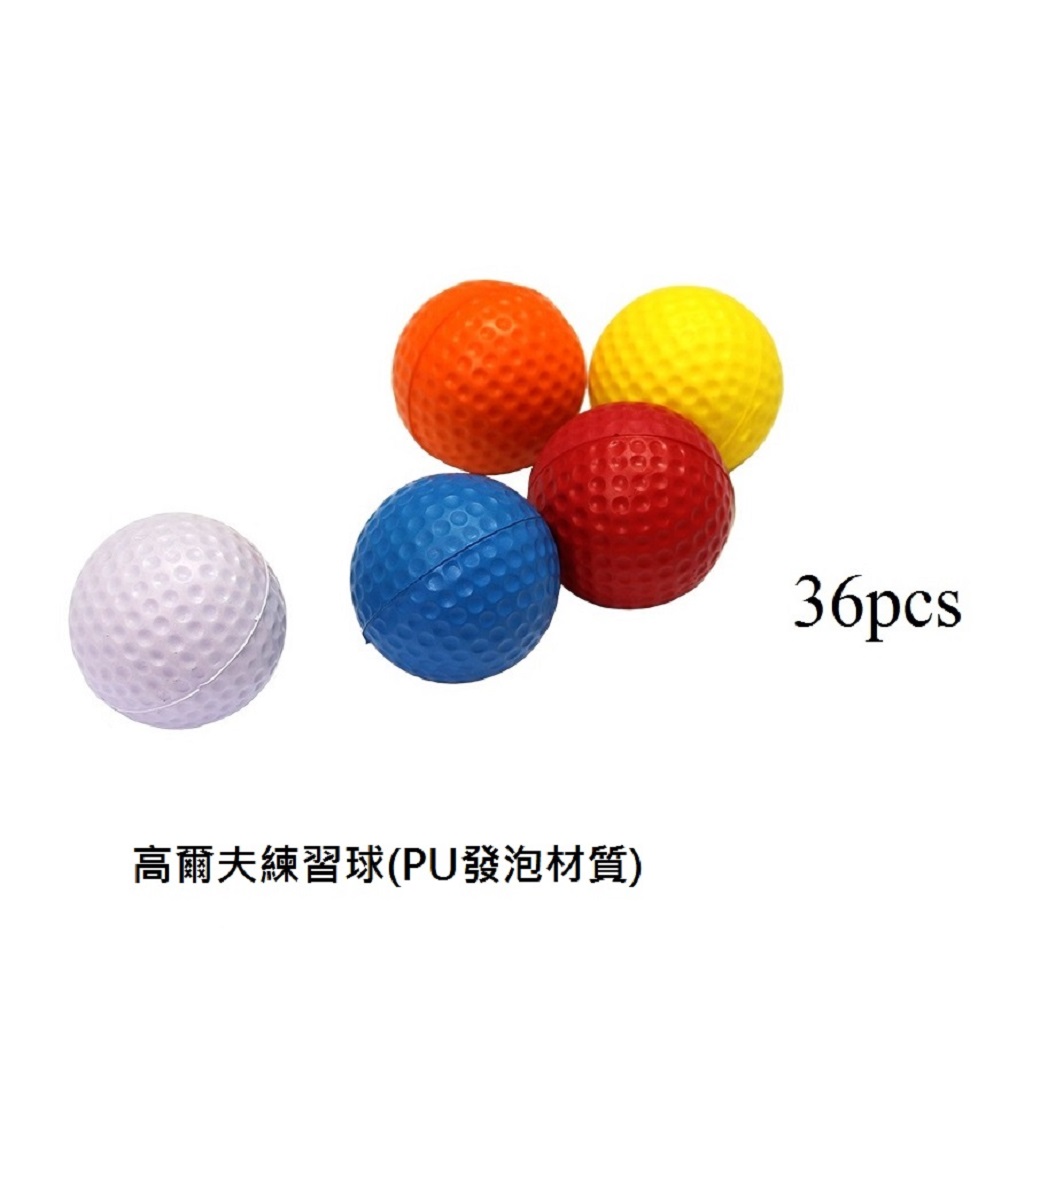 Posma Pb010b 高爾夫室內練習球 發泡 36pcs Pchome 24h購物